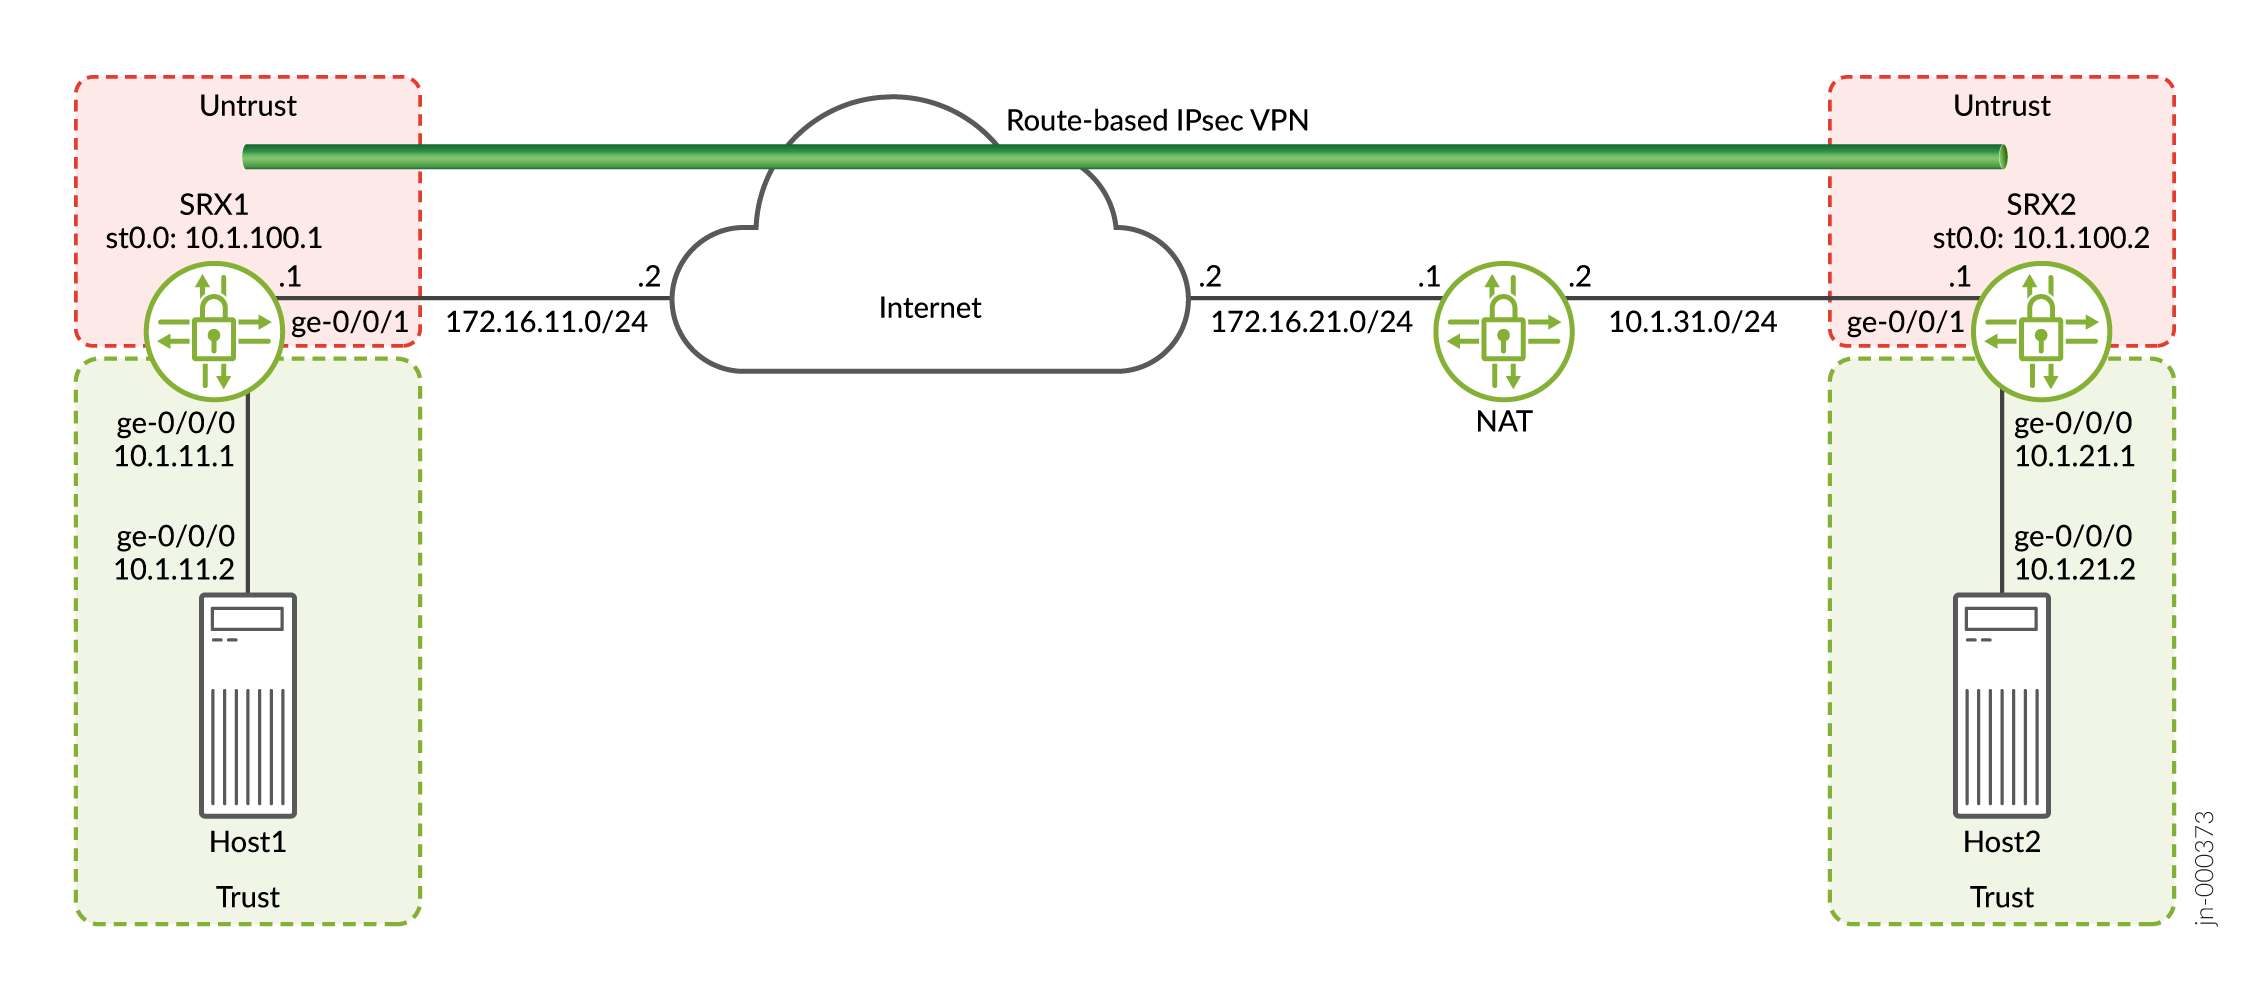 Topología VPN basada en rutas con solo el respondedor behind un dispositivo TDR